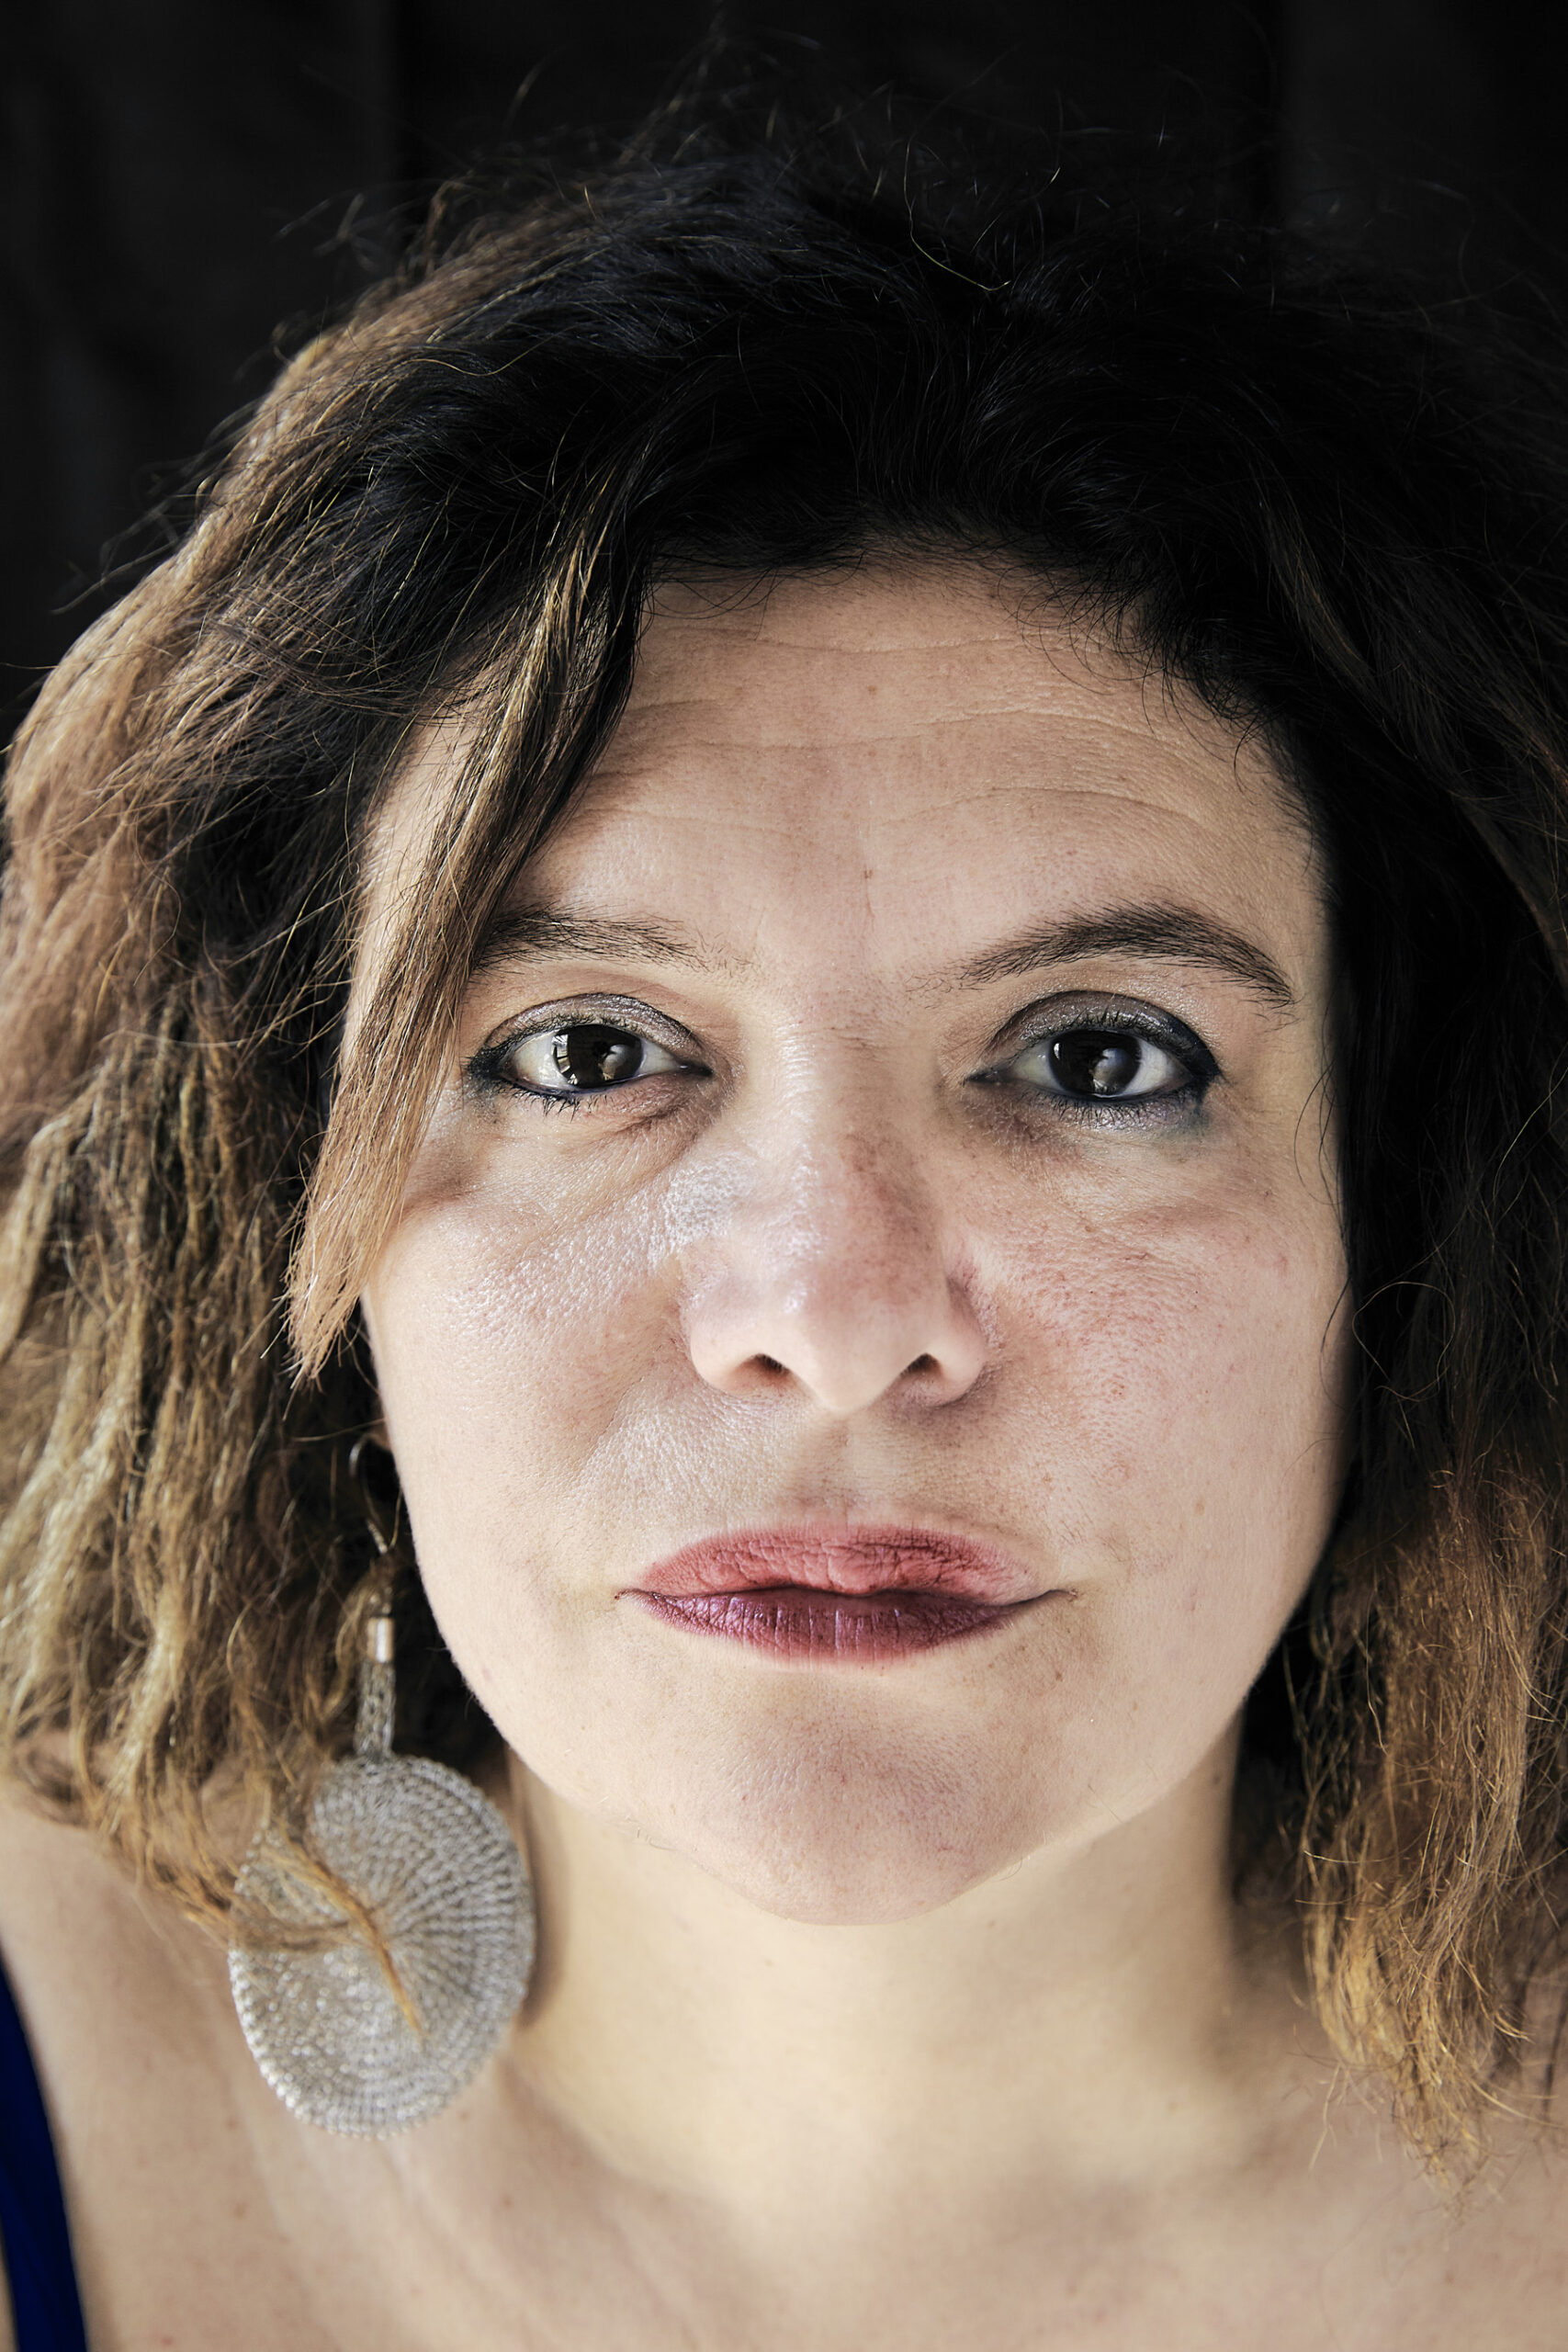 Alessia Siniscalchi – Portraits